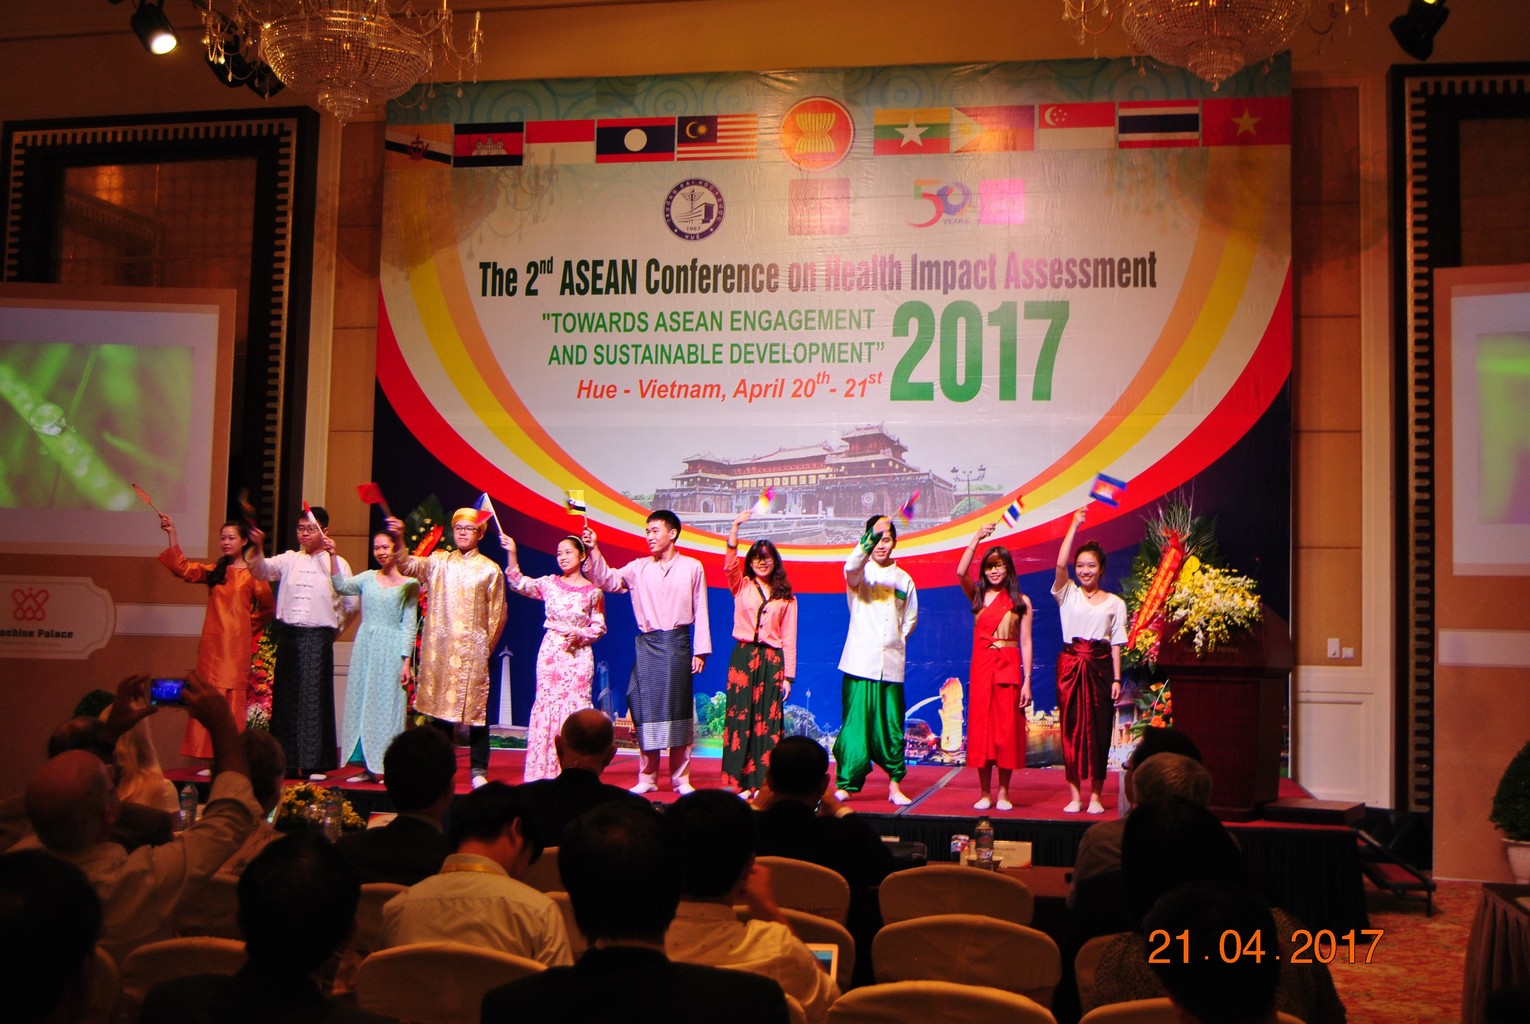 Hội nghị Asean lần thứ 2 về đánh giá tác động y tế hướng đến Asian bền vững